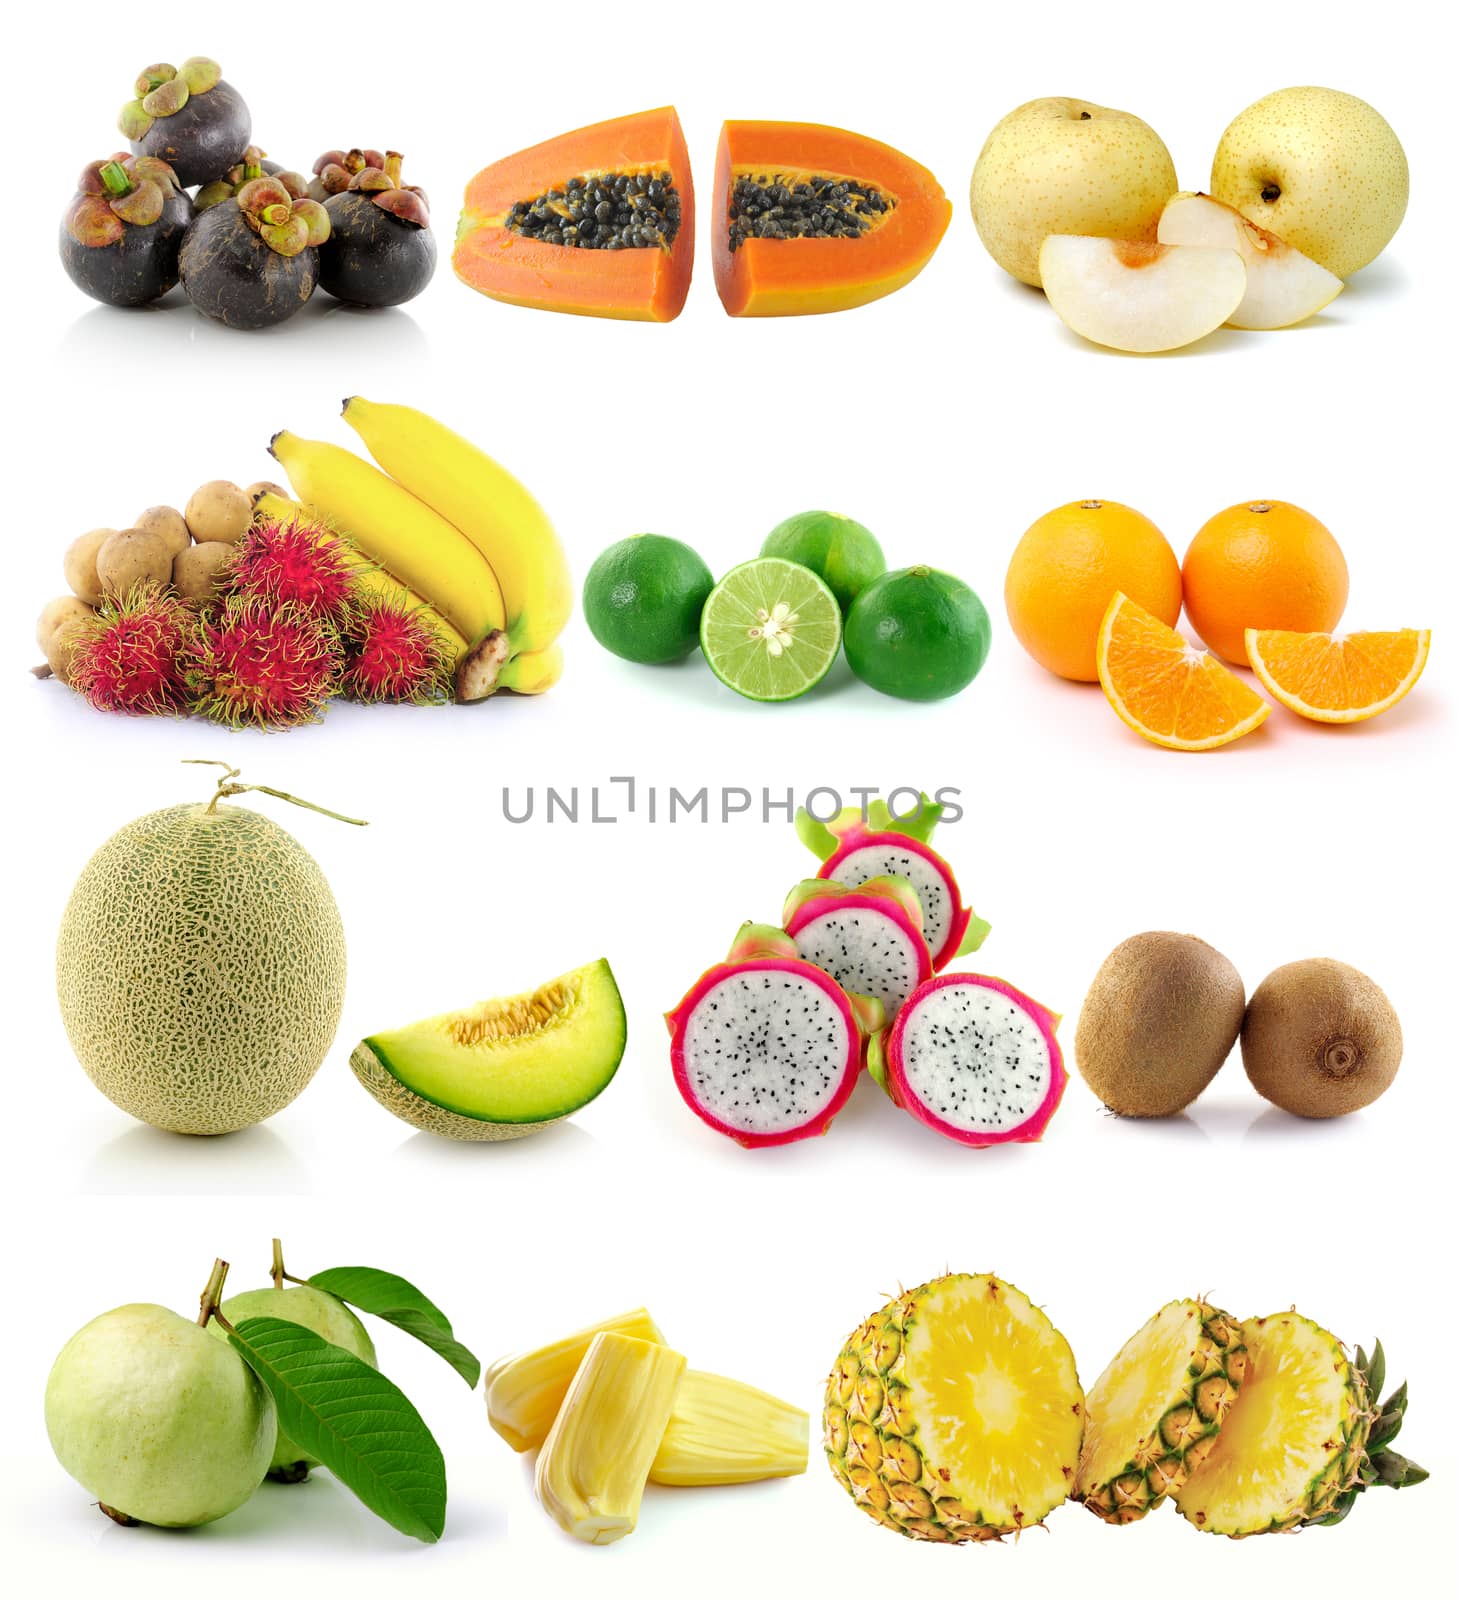 set of fruit on white background